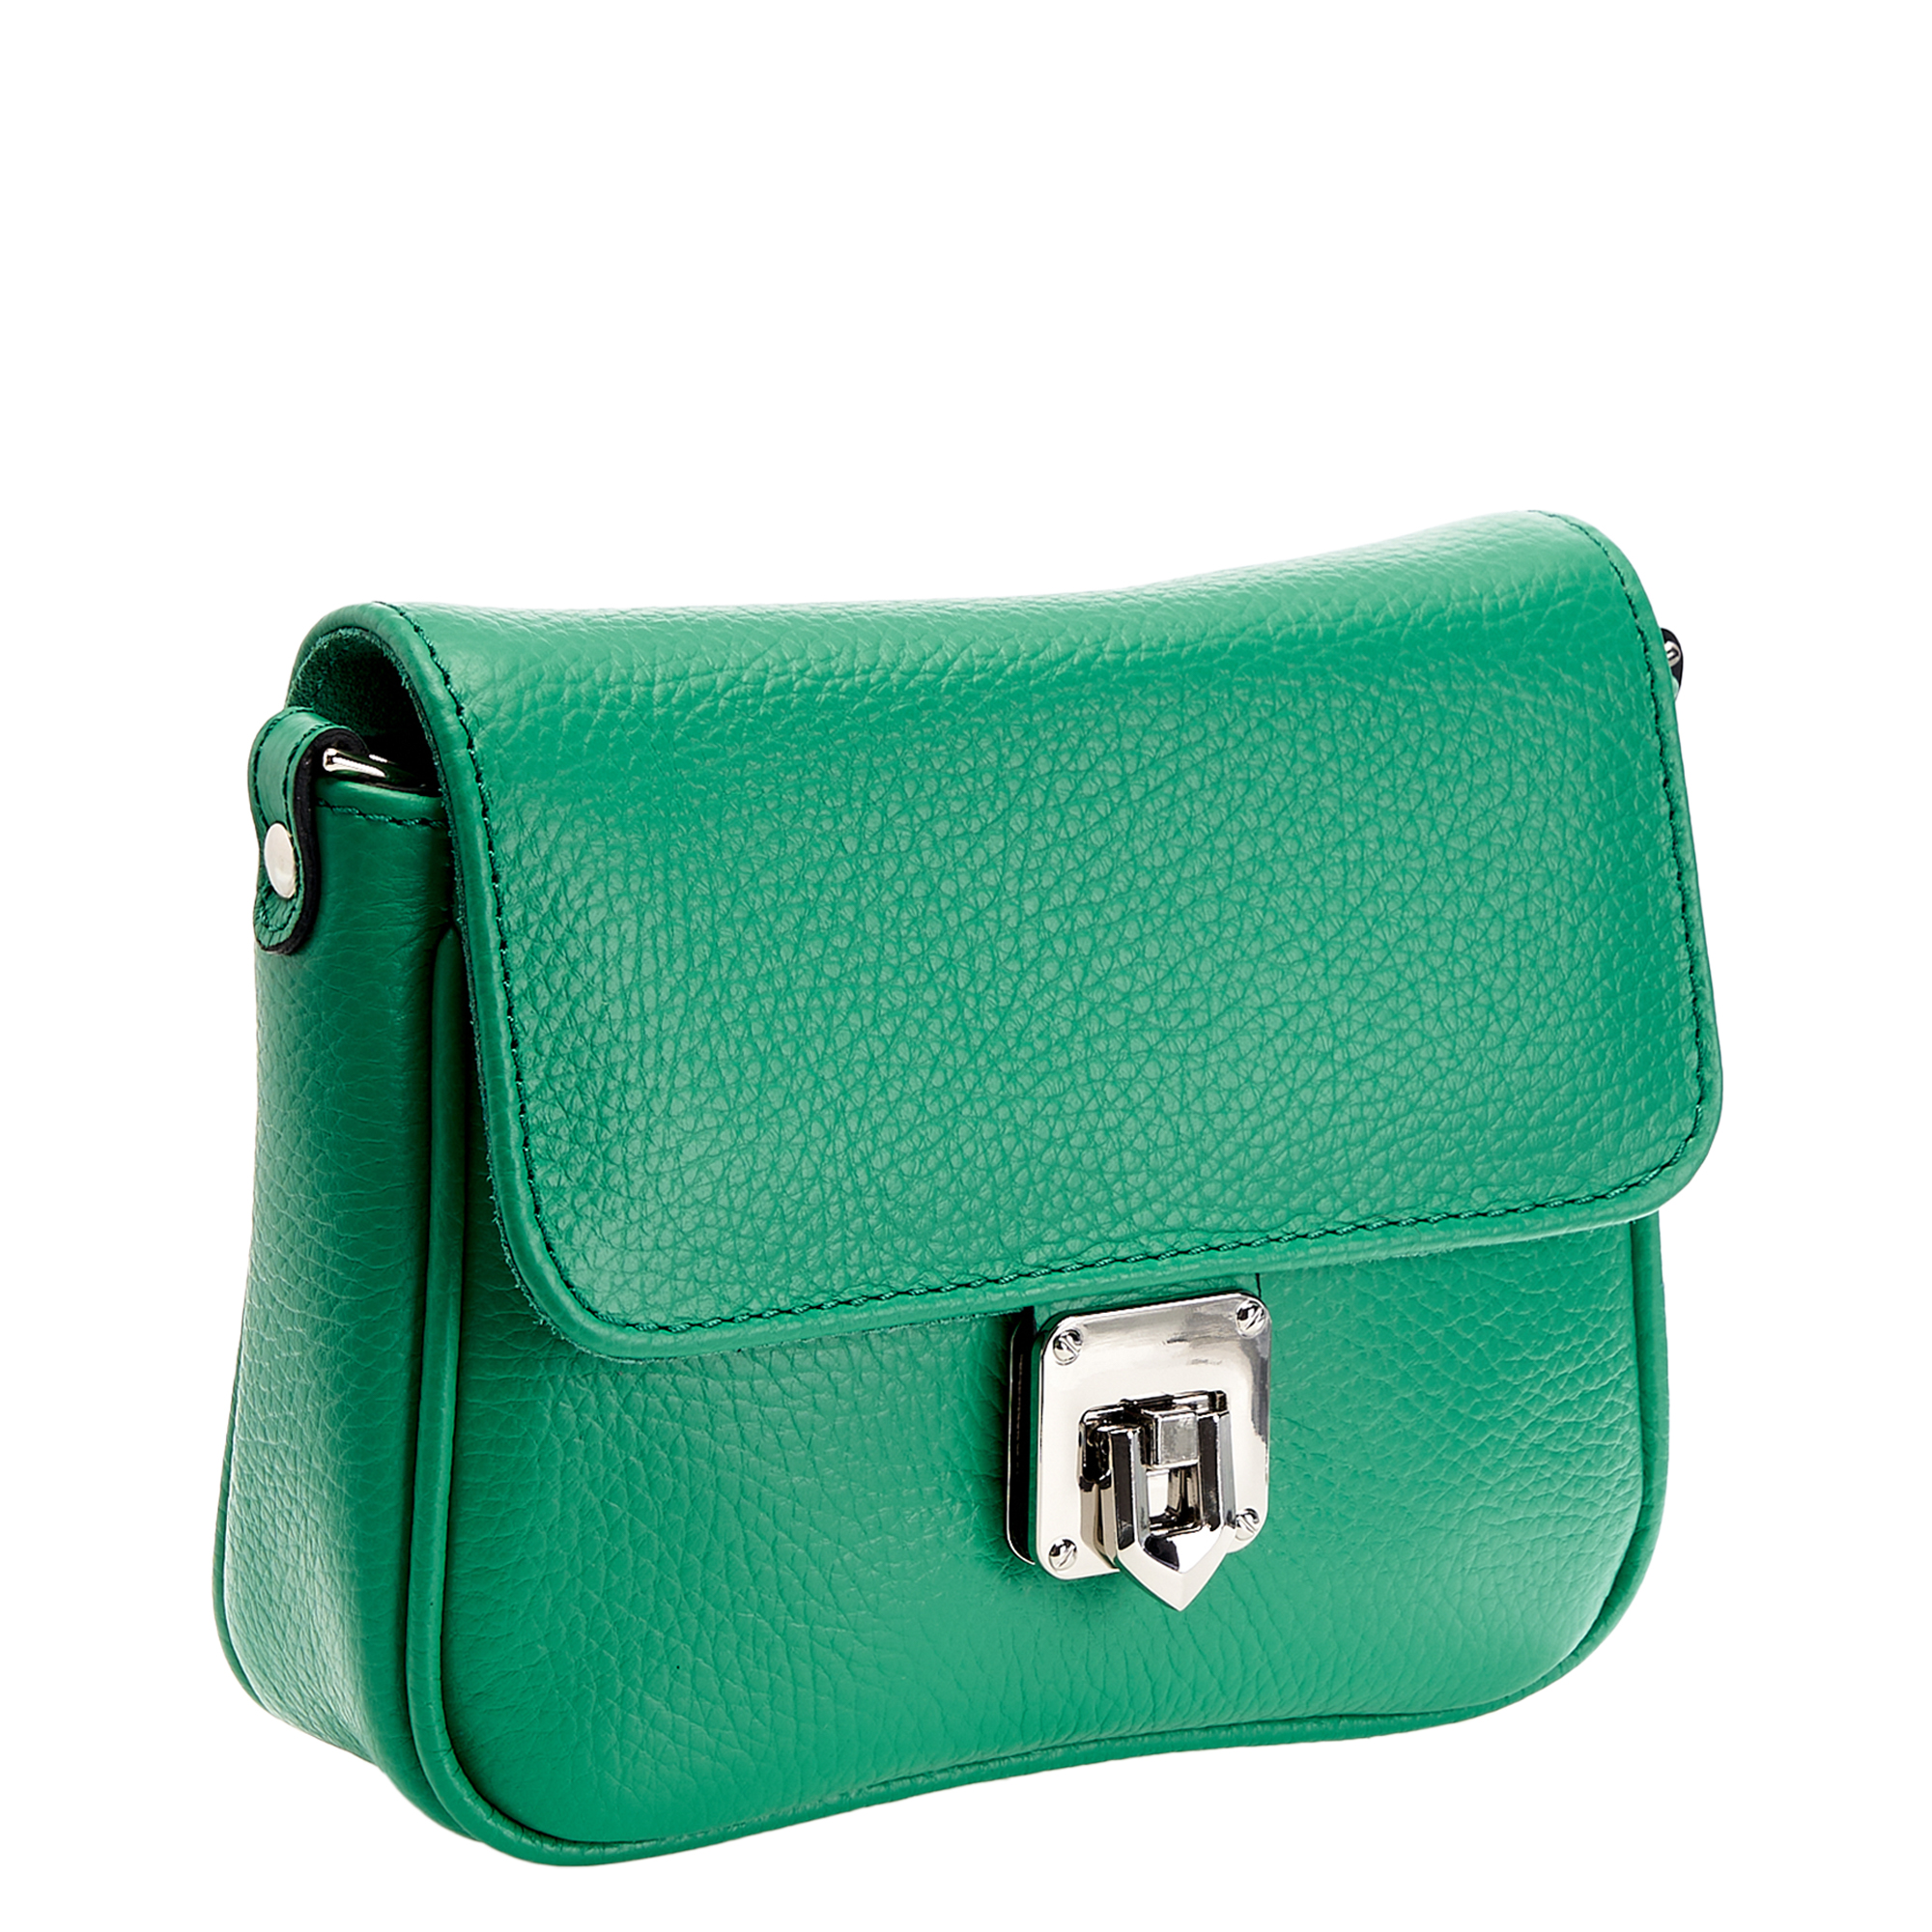 Др.Коффер 50732S-65 сумка женская, цвет зеленый